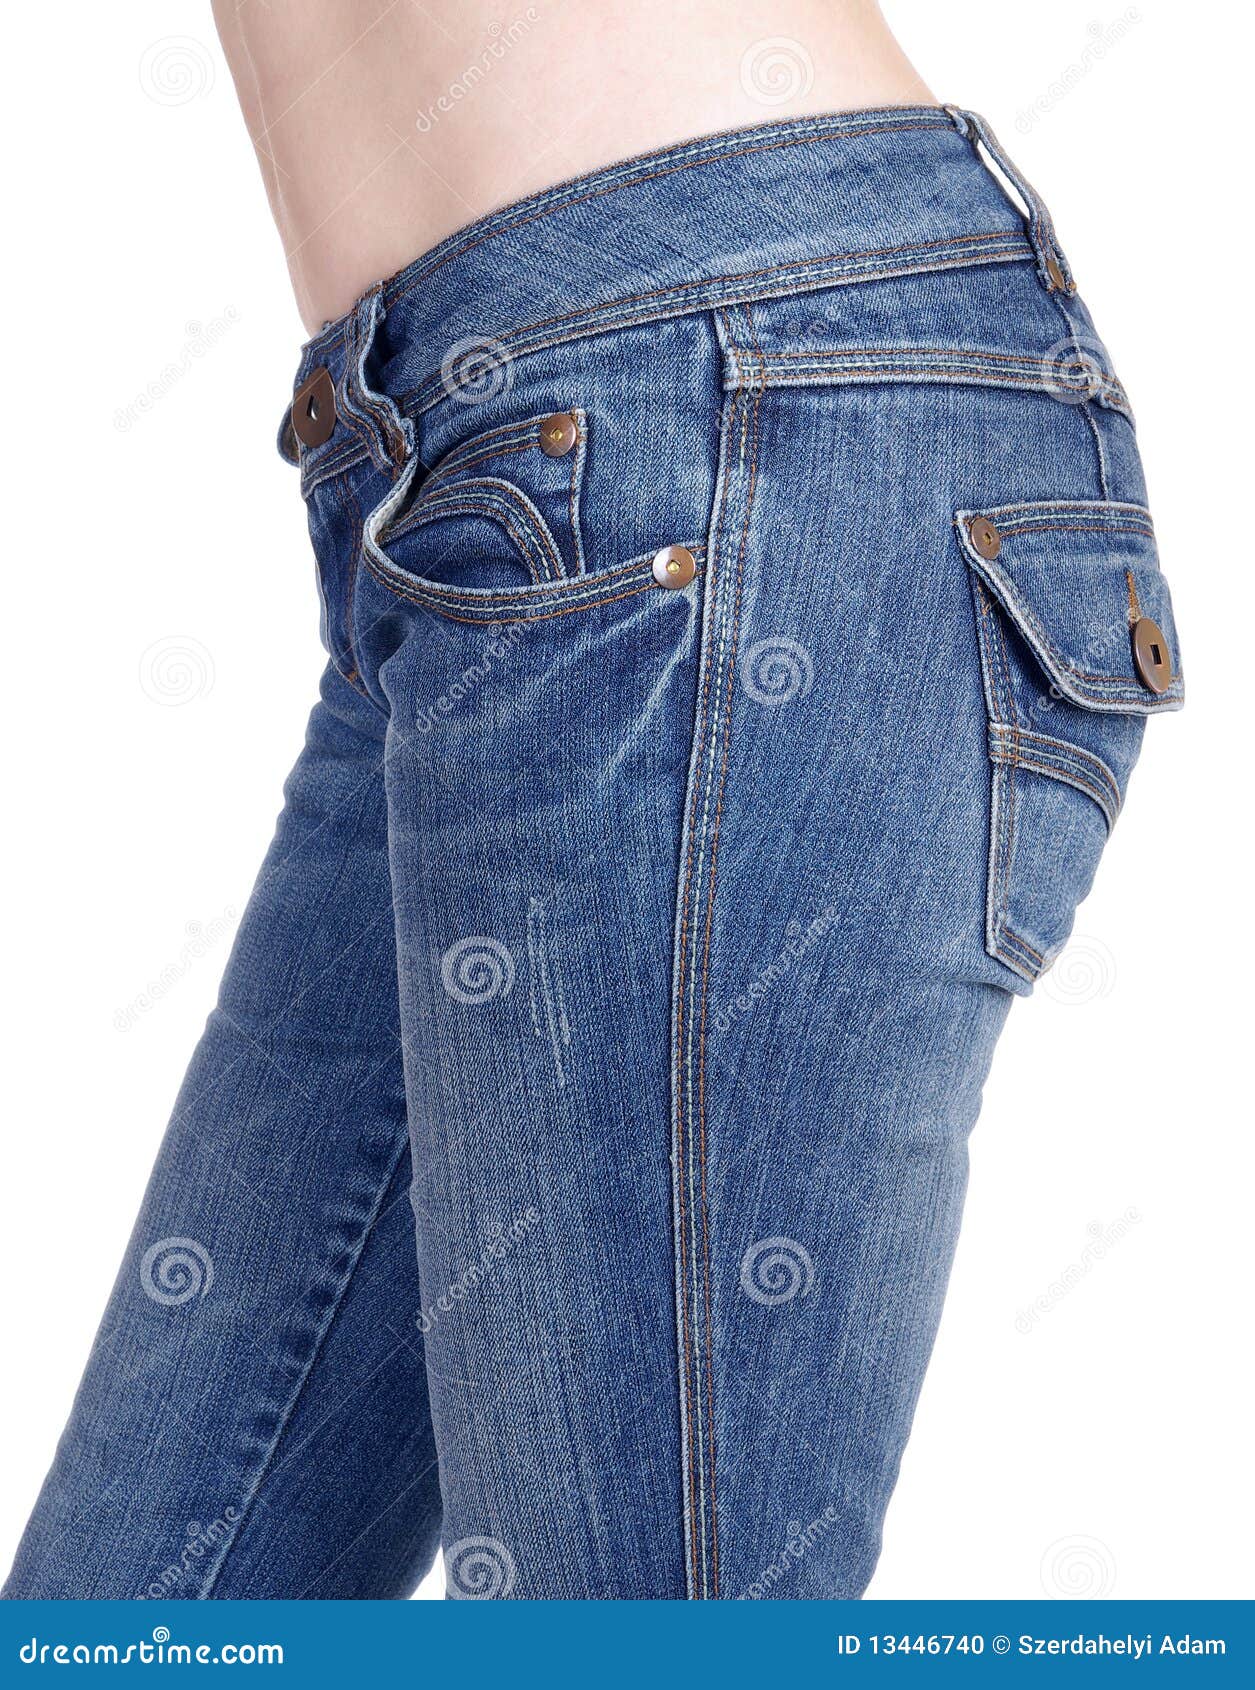 Women in jeans stock photo. Image of beauty, denim, cheek - 13446740